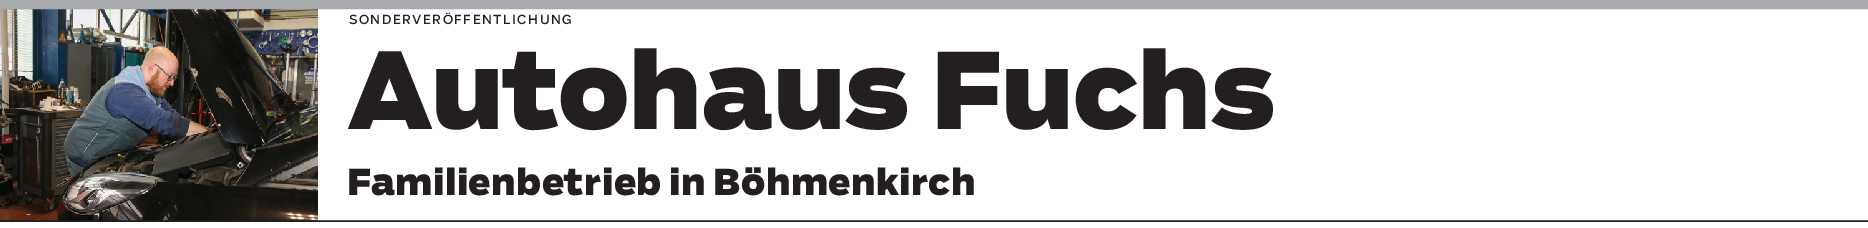 Autohaus Fuchs in Böhmenkirch: Eine Werkstatt – alle Marken